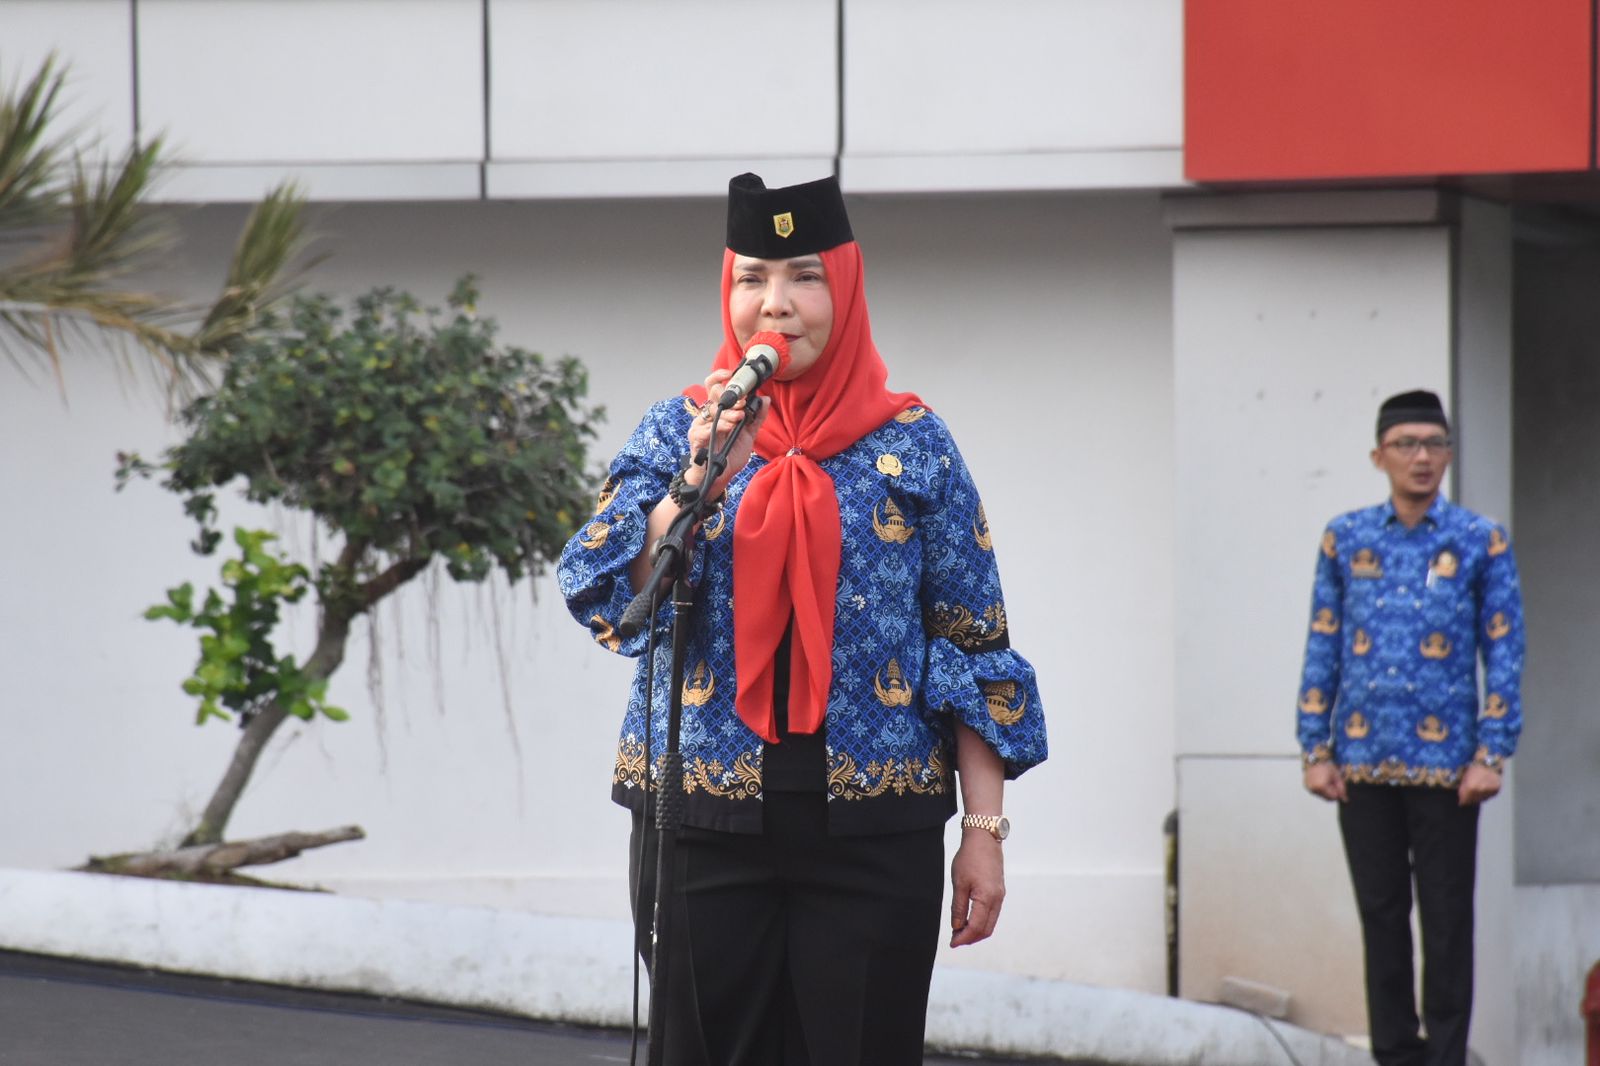 Hari Bela Negara, Wali Kota Bandar Lampung Ajak Seluruh Pegawai Berkontribusi untuk Bangsa